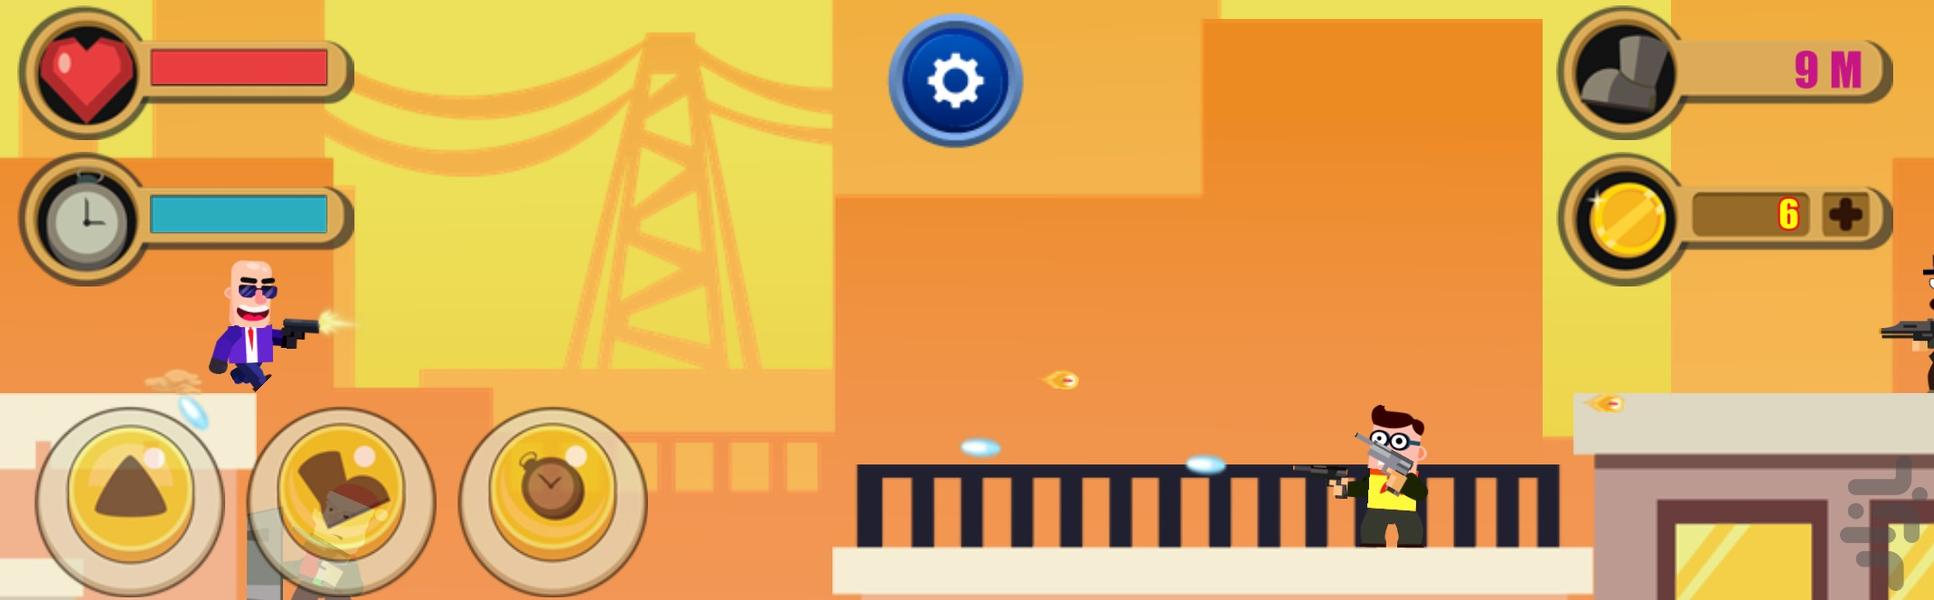 بازی تیرانداز - Gameplay image of android game